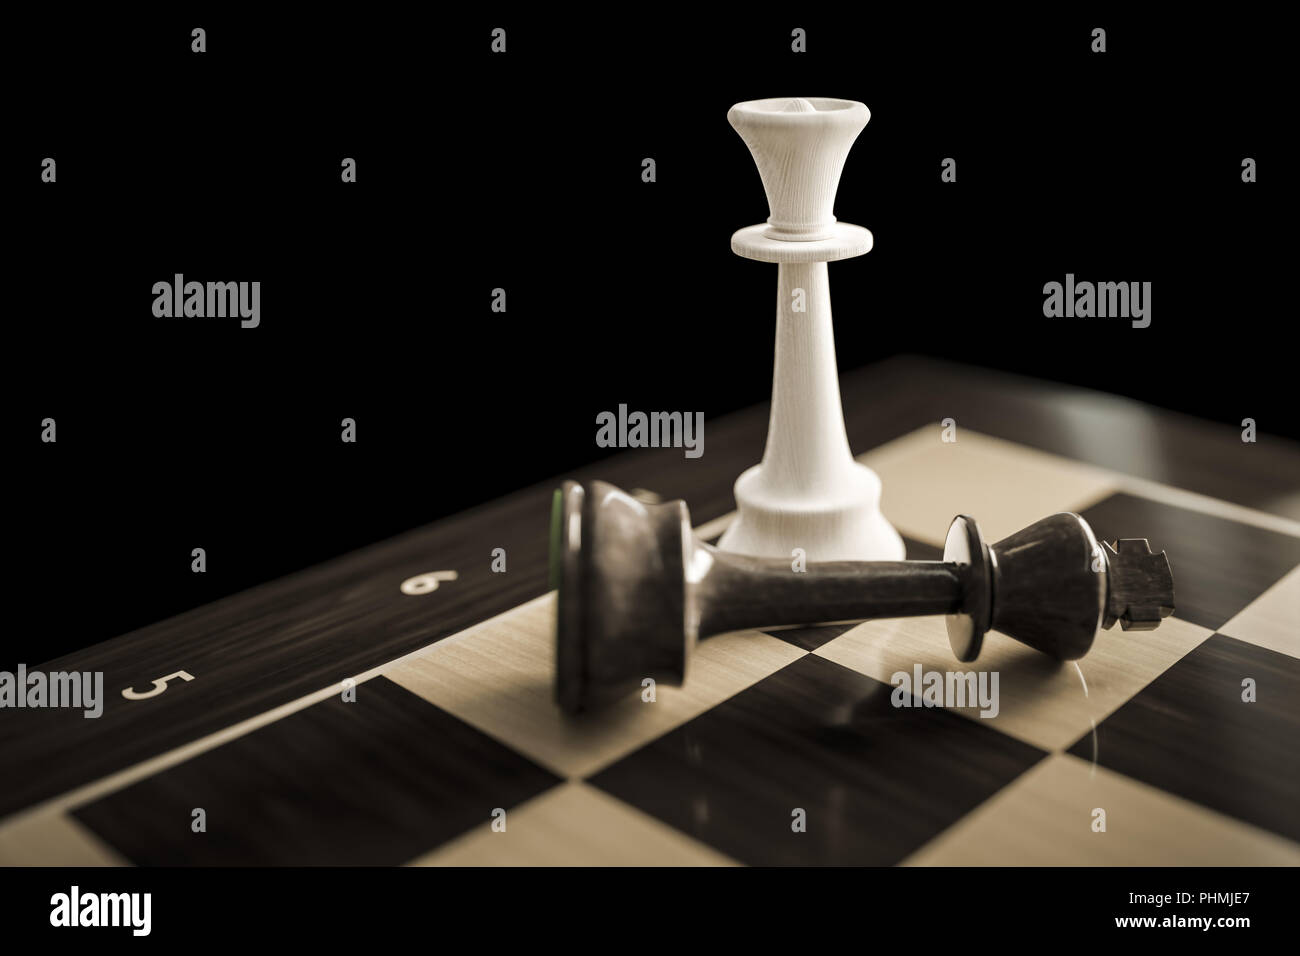 Jeu d'échecs typique de checkmate Banque D'Images